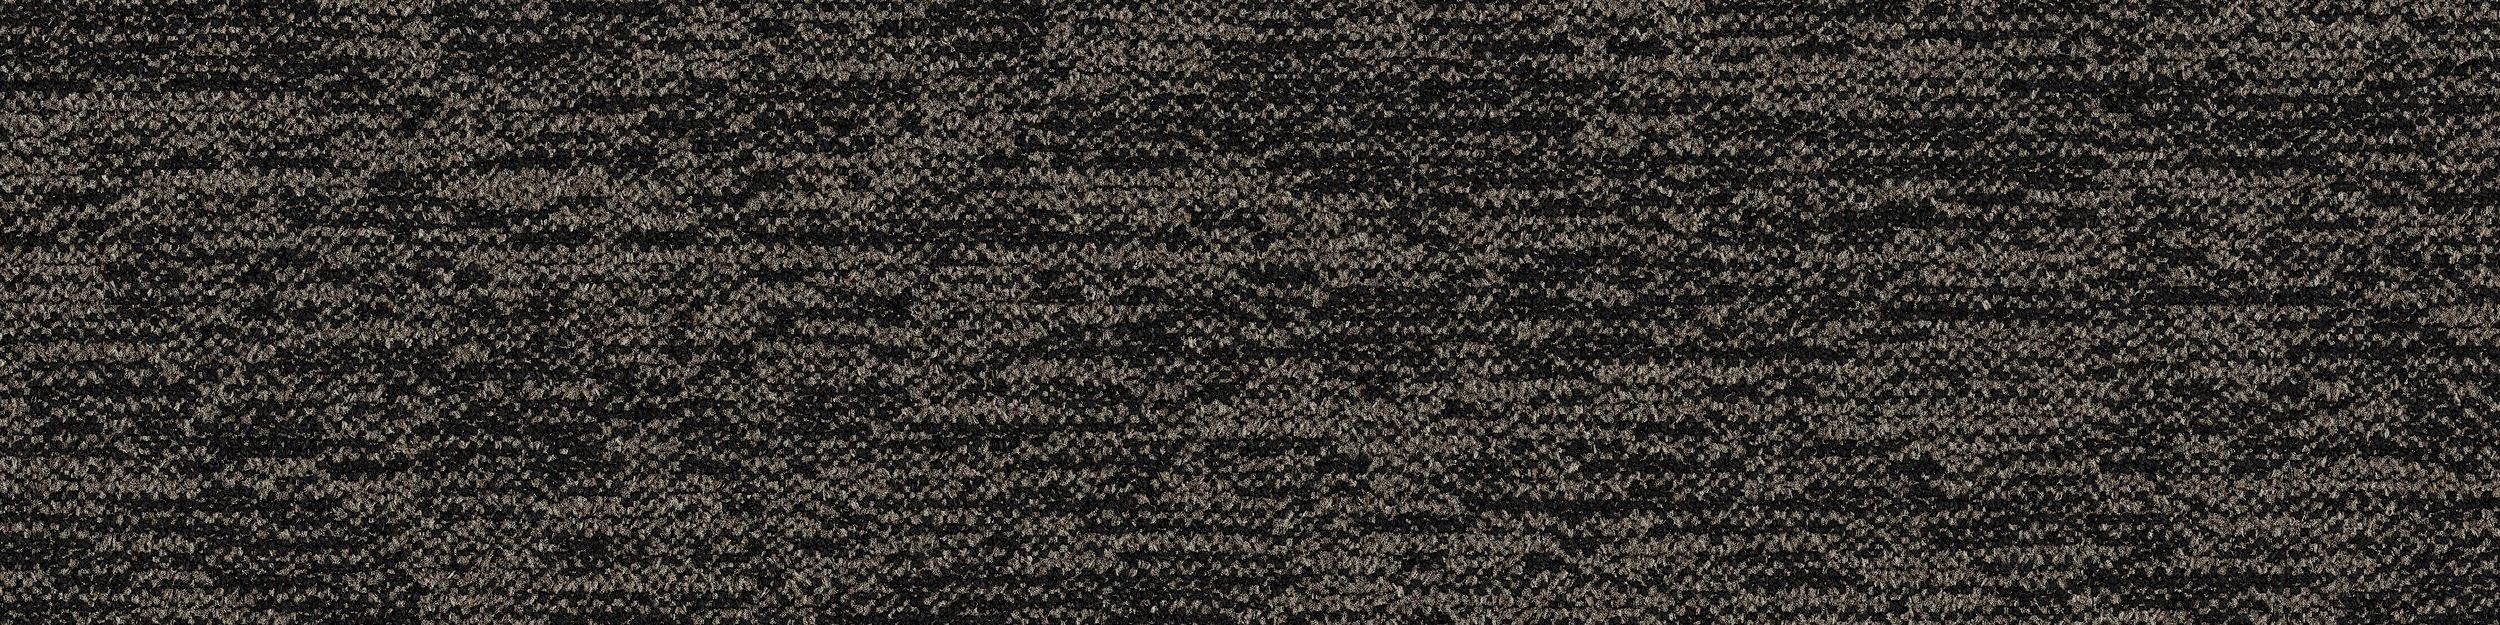 DL908 Carpet Tile In Basalt image number 2